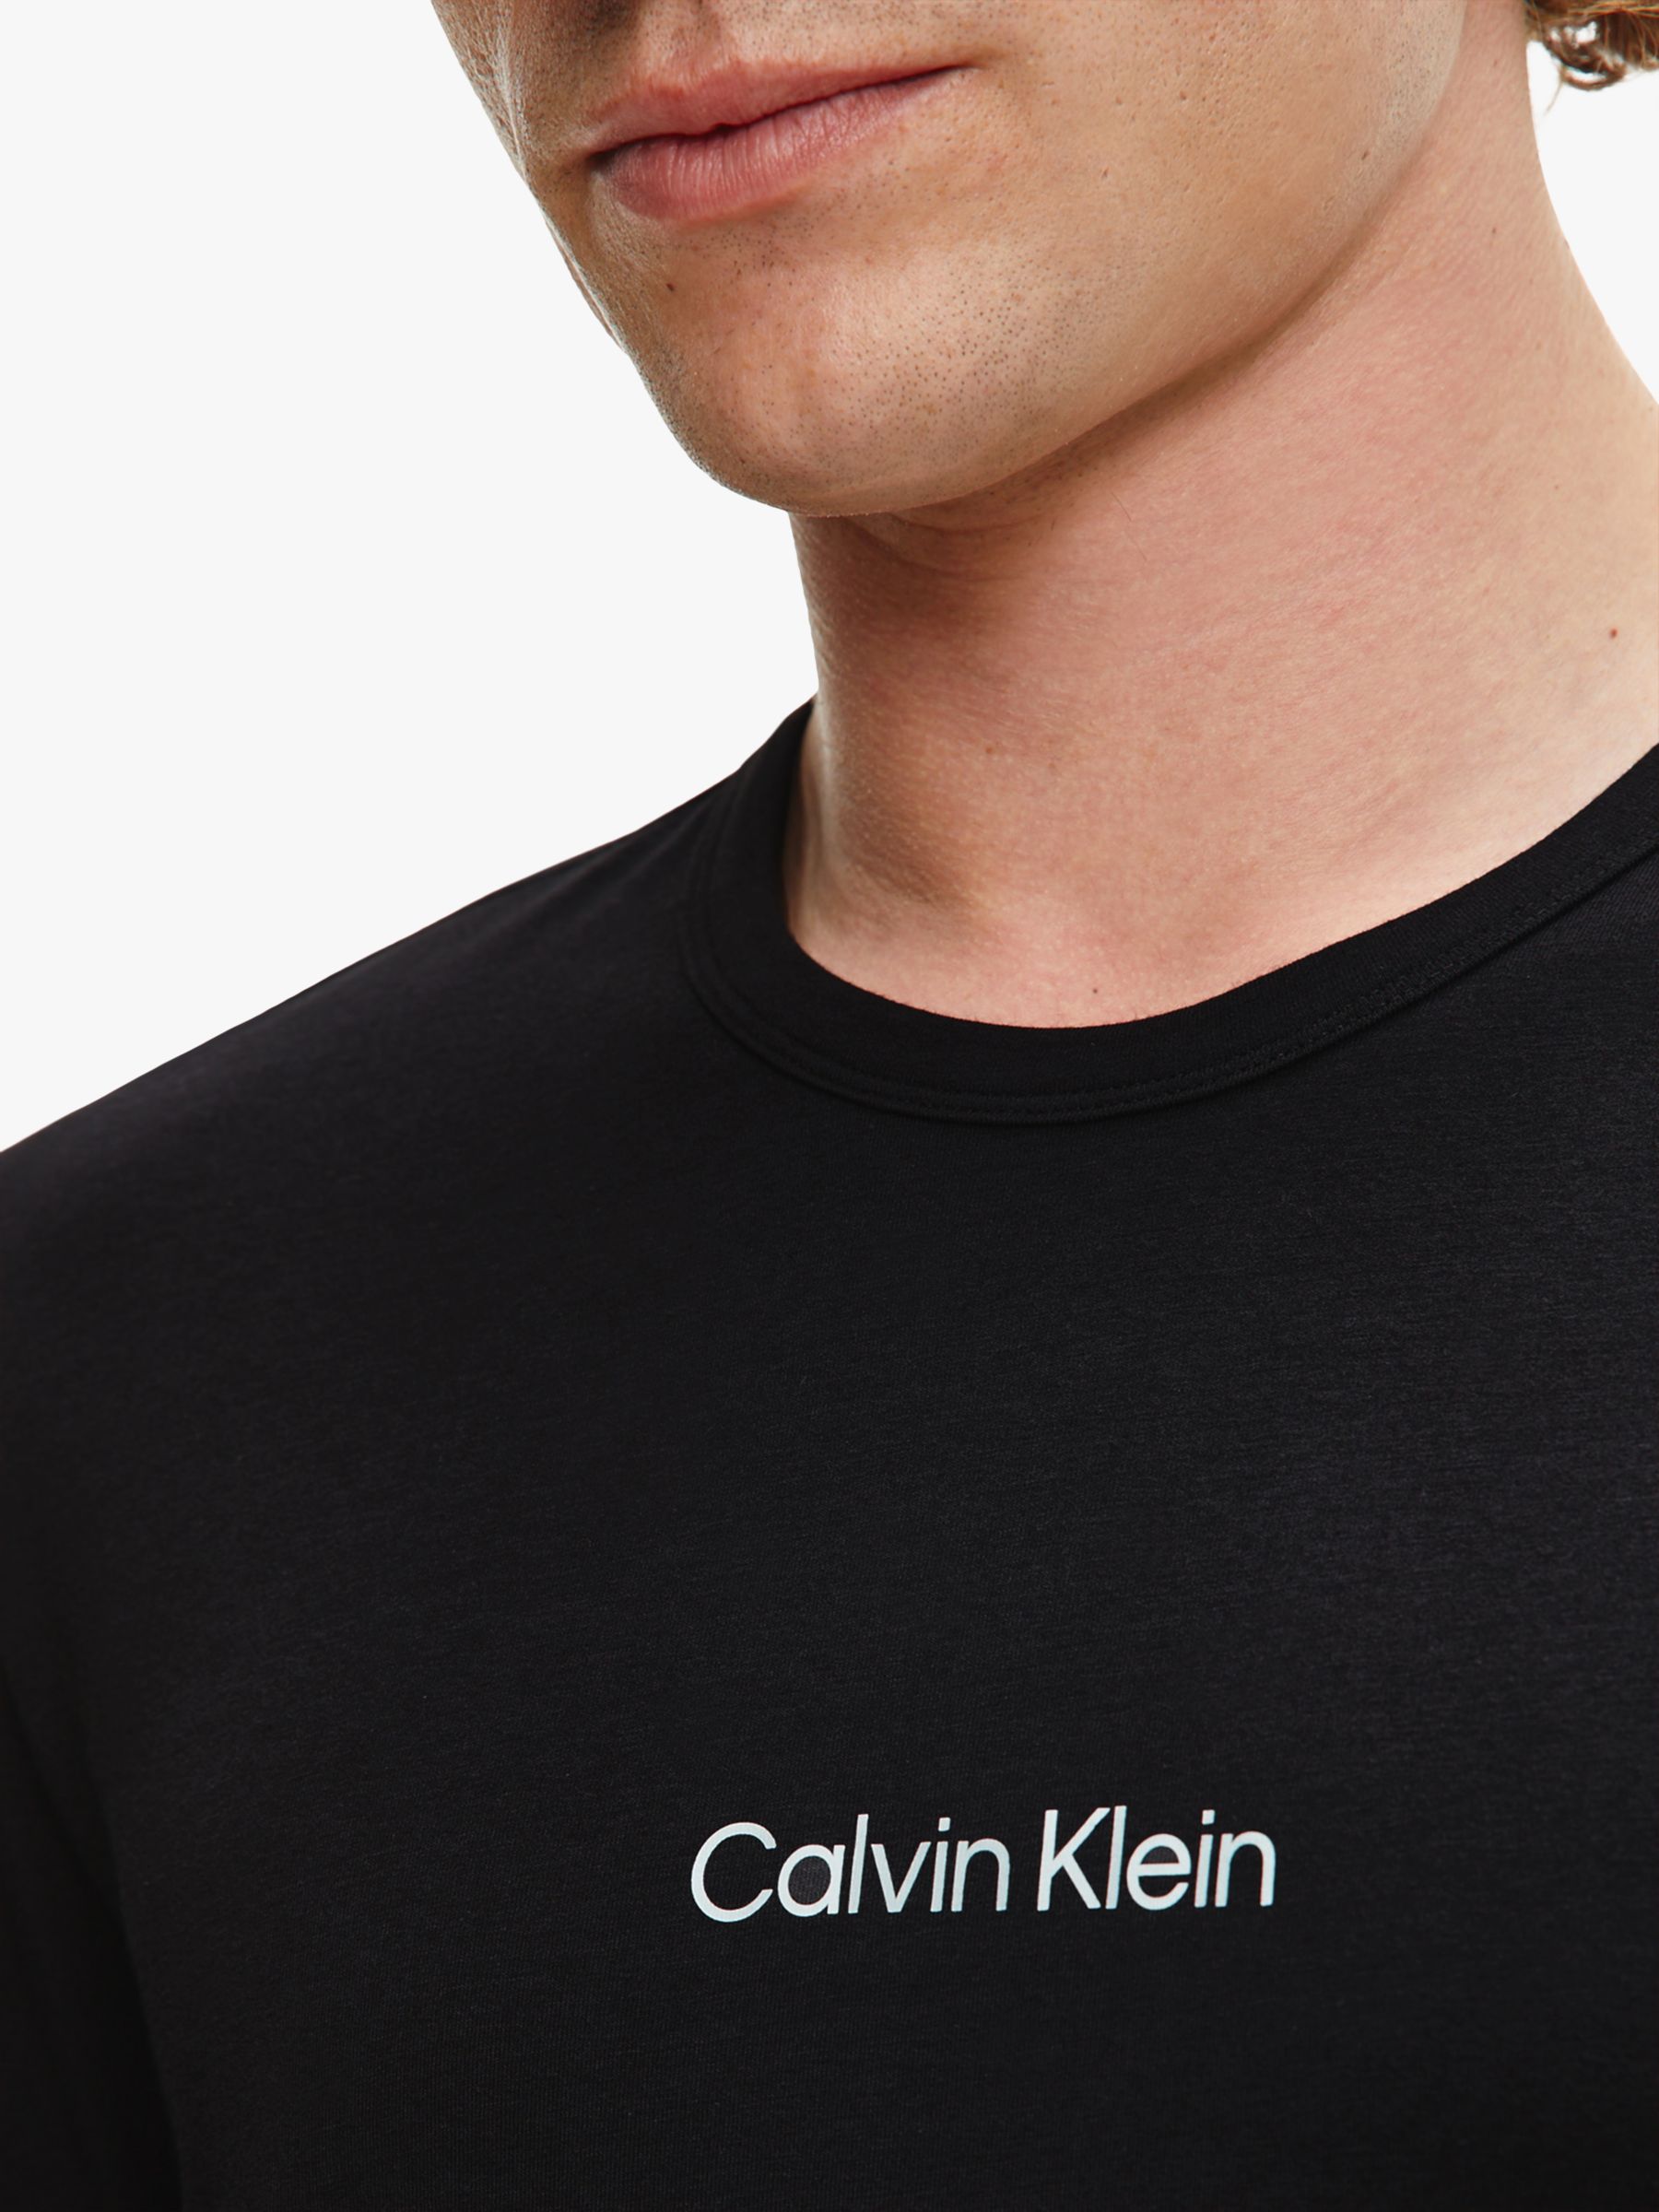 Calvin Klein Long Sleeve Logo Lounge T-Shirt, Black at John Lewis ...